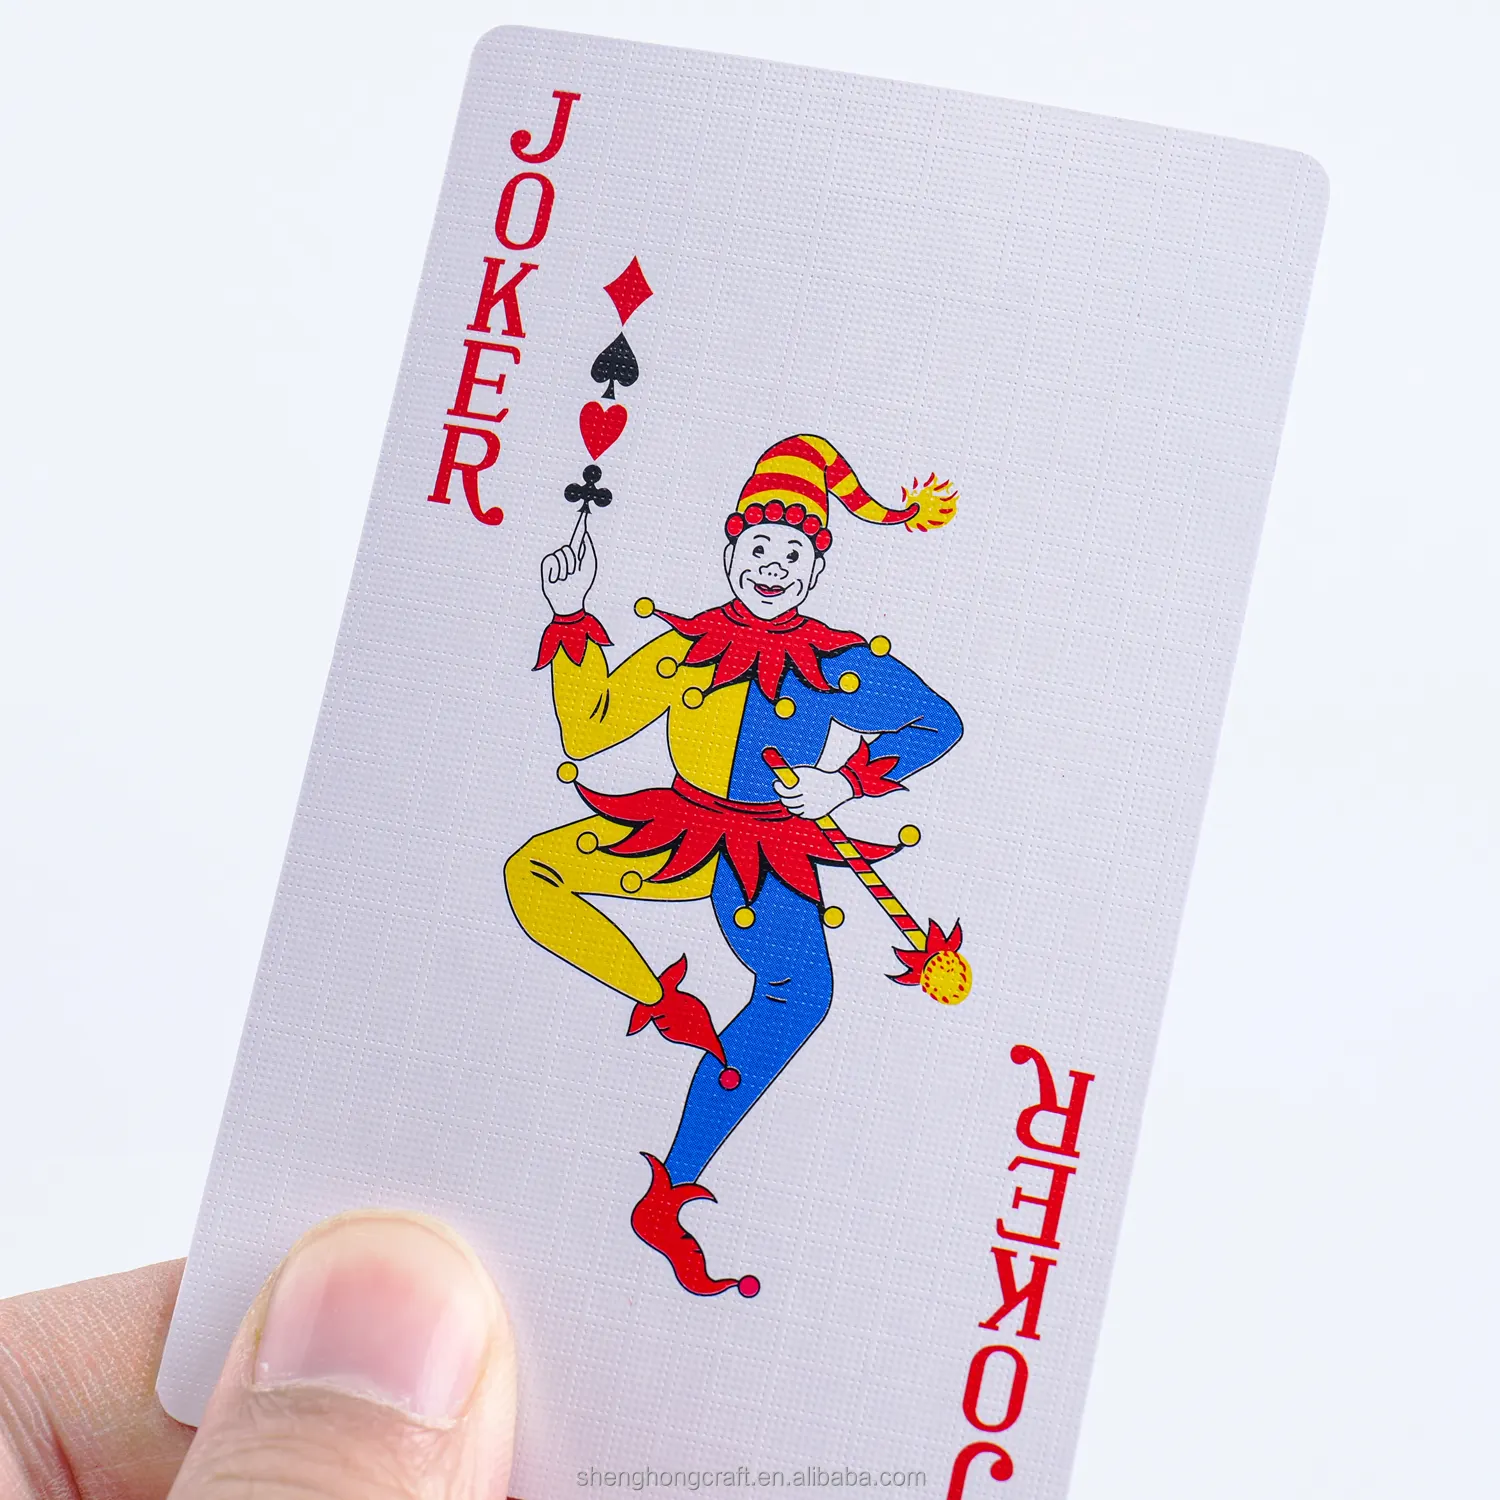 Di alta qualità all'ingrosso personalizzato gioco di carte da gioco 108 carte in due mazzi con Logo personalizzato carta Poker carte per la vendita